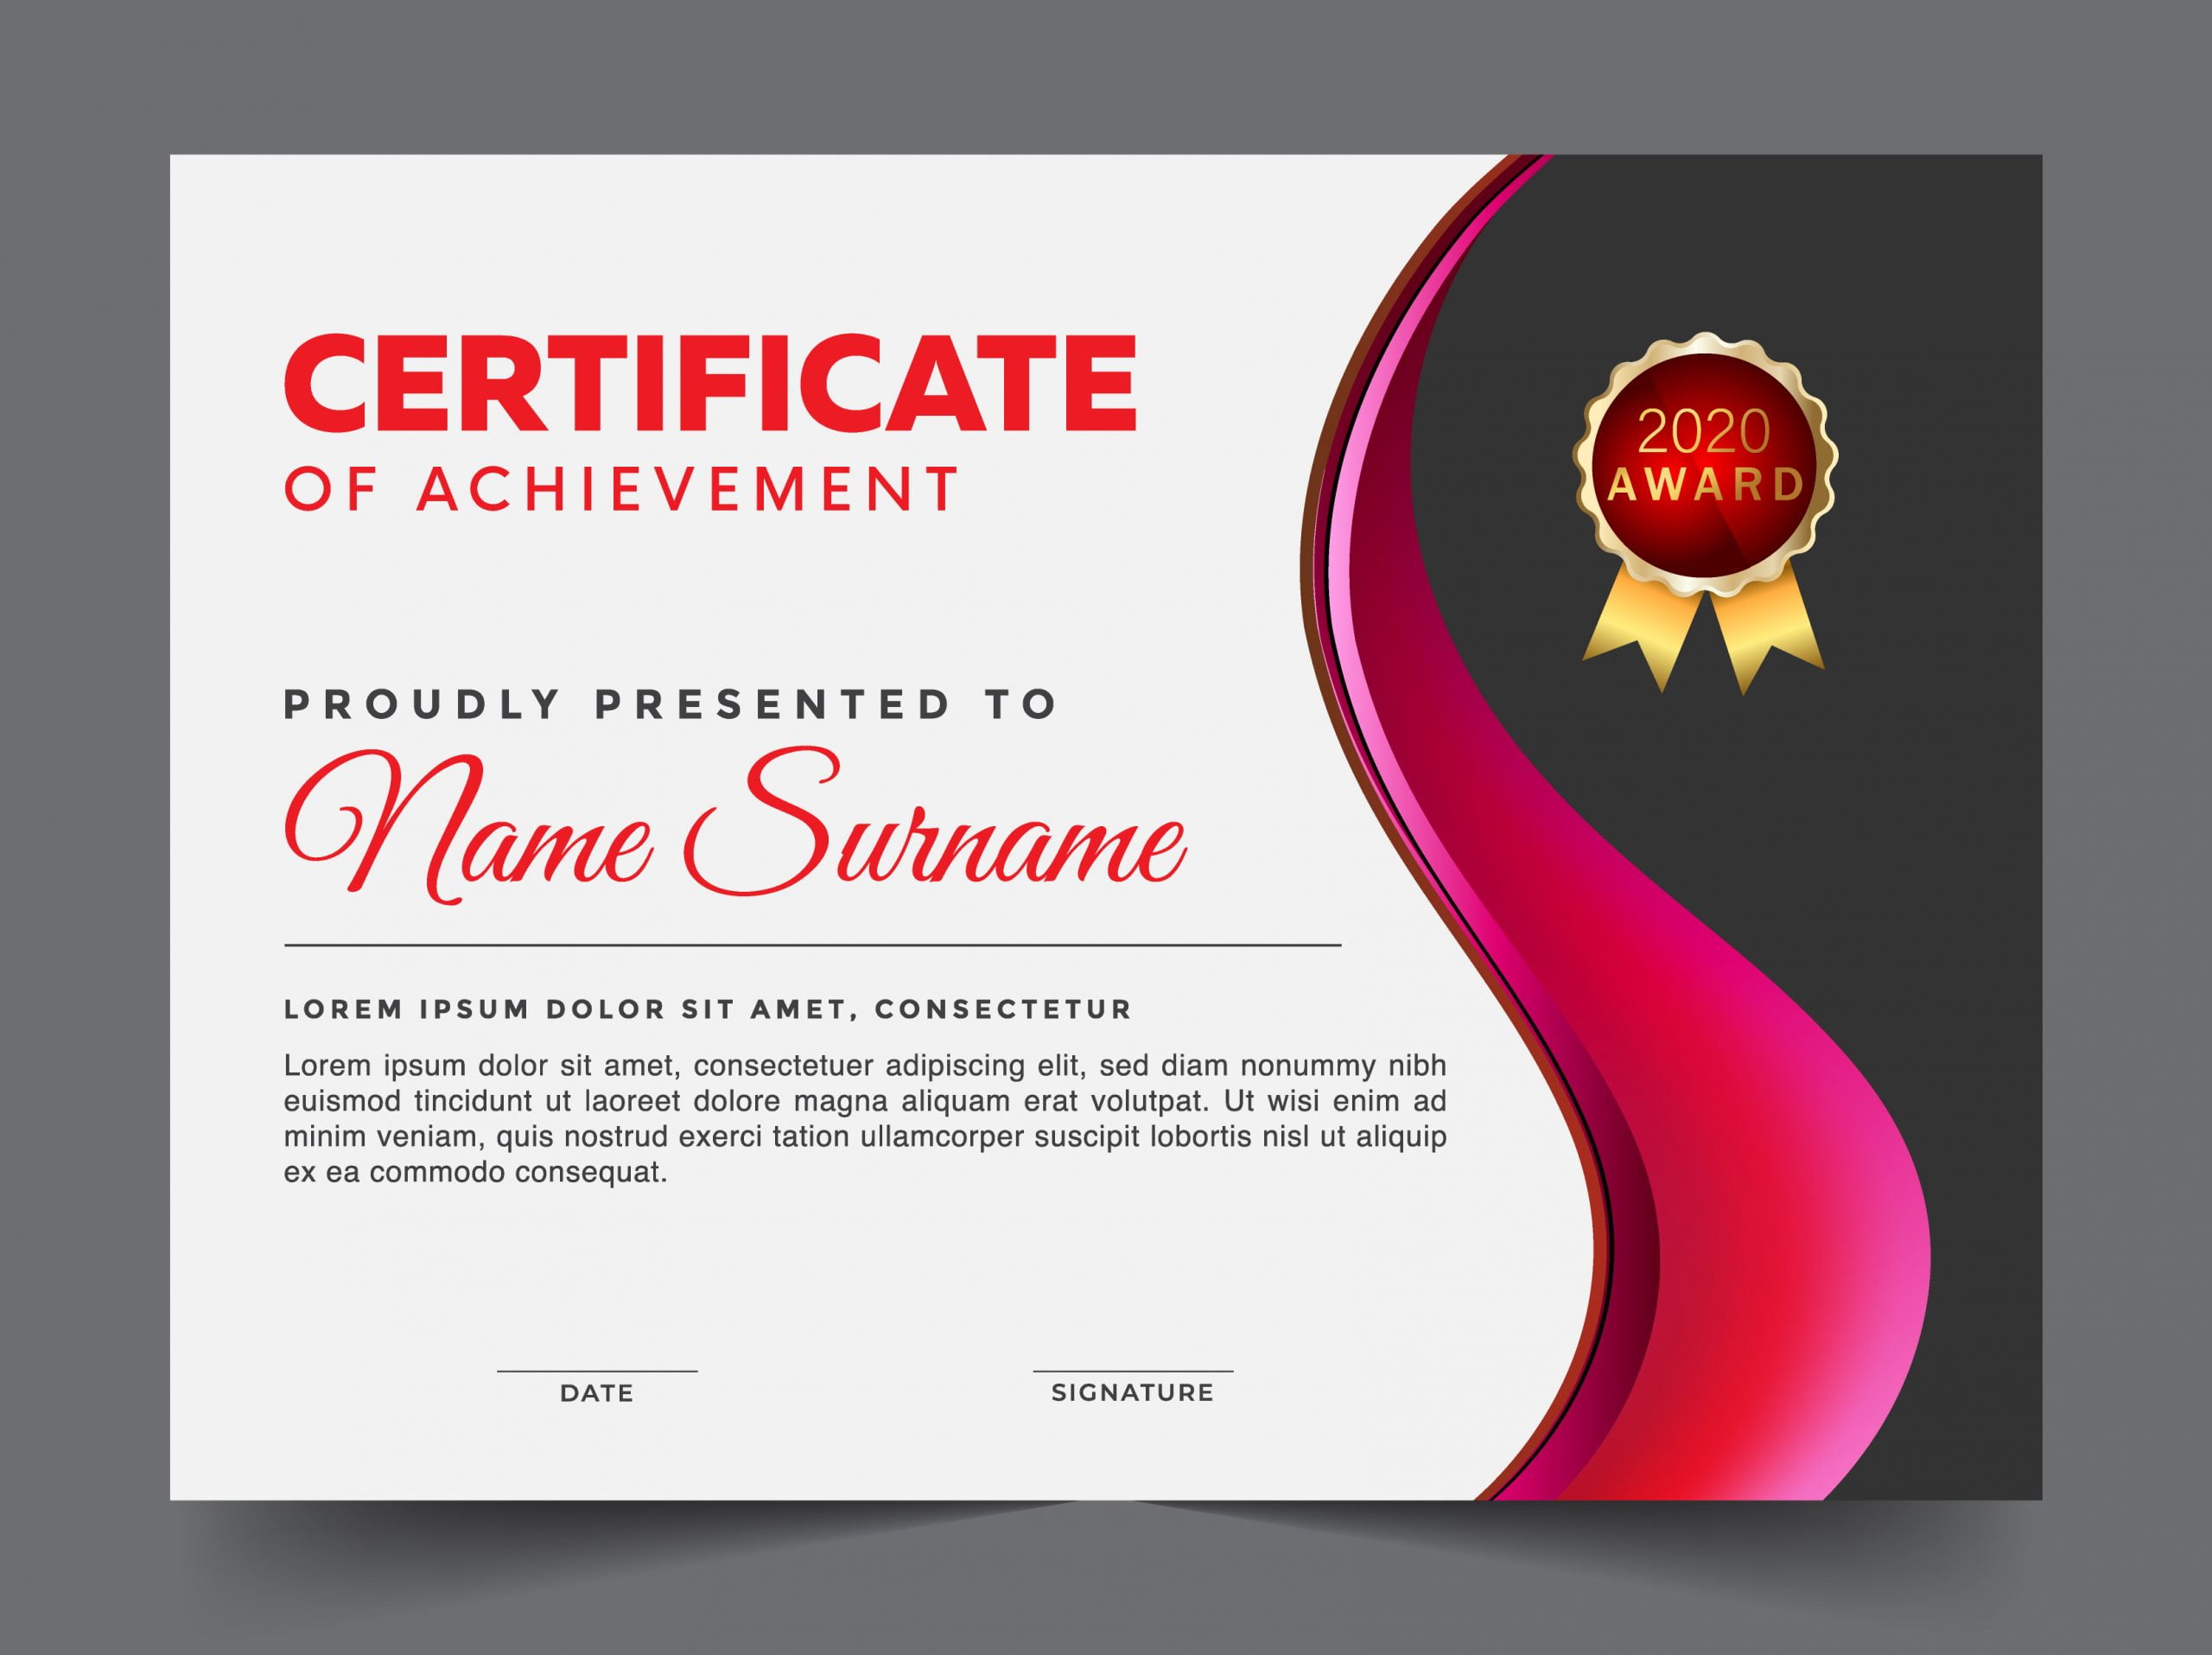 design a certificate template